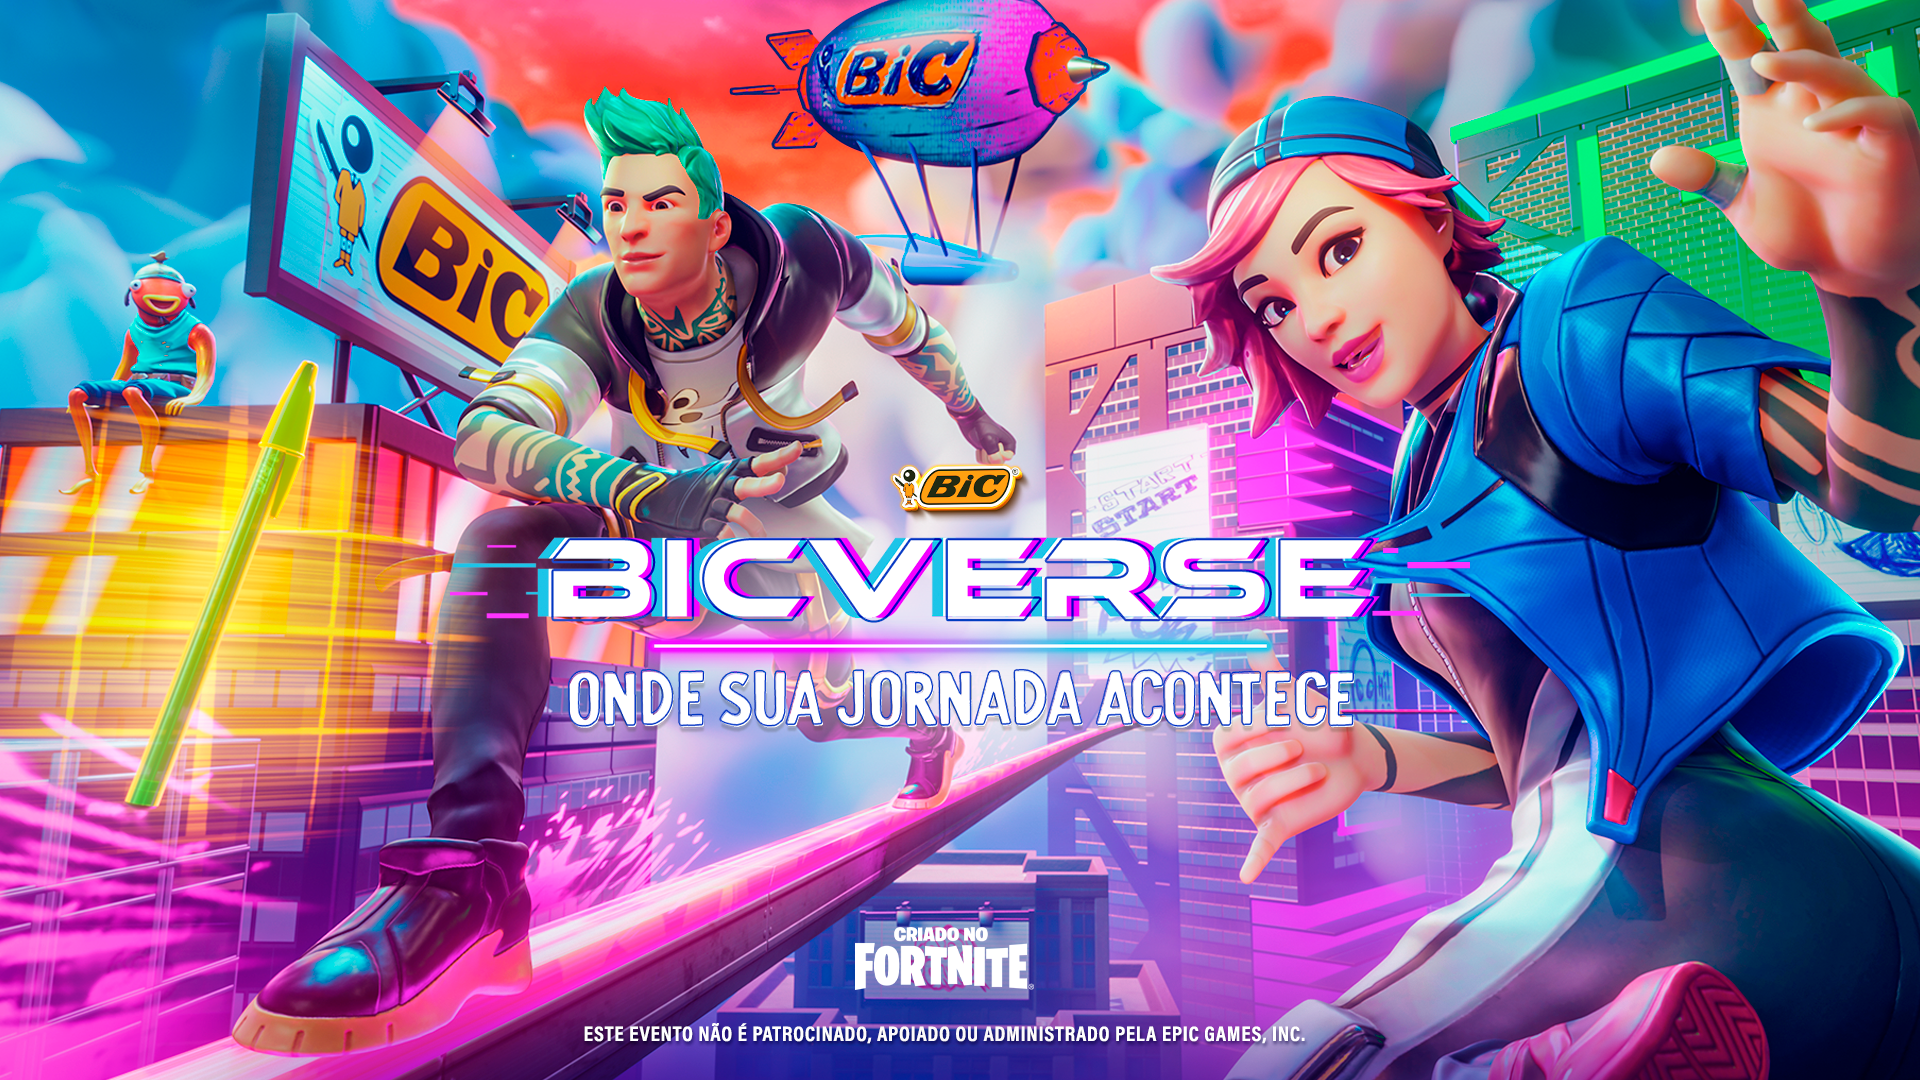 BICVERSE: Onde sua jornada acontece! BIC anuncia chegada ao metaverso com  gameplay épica no Fortnite - EP GRUPO